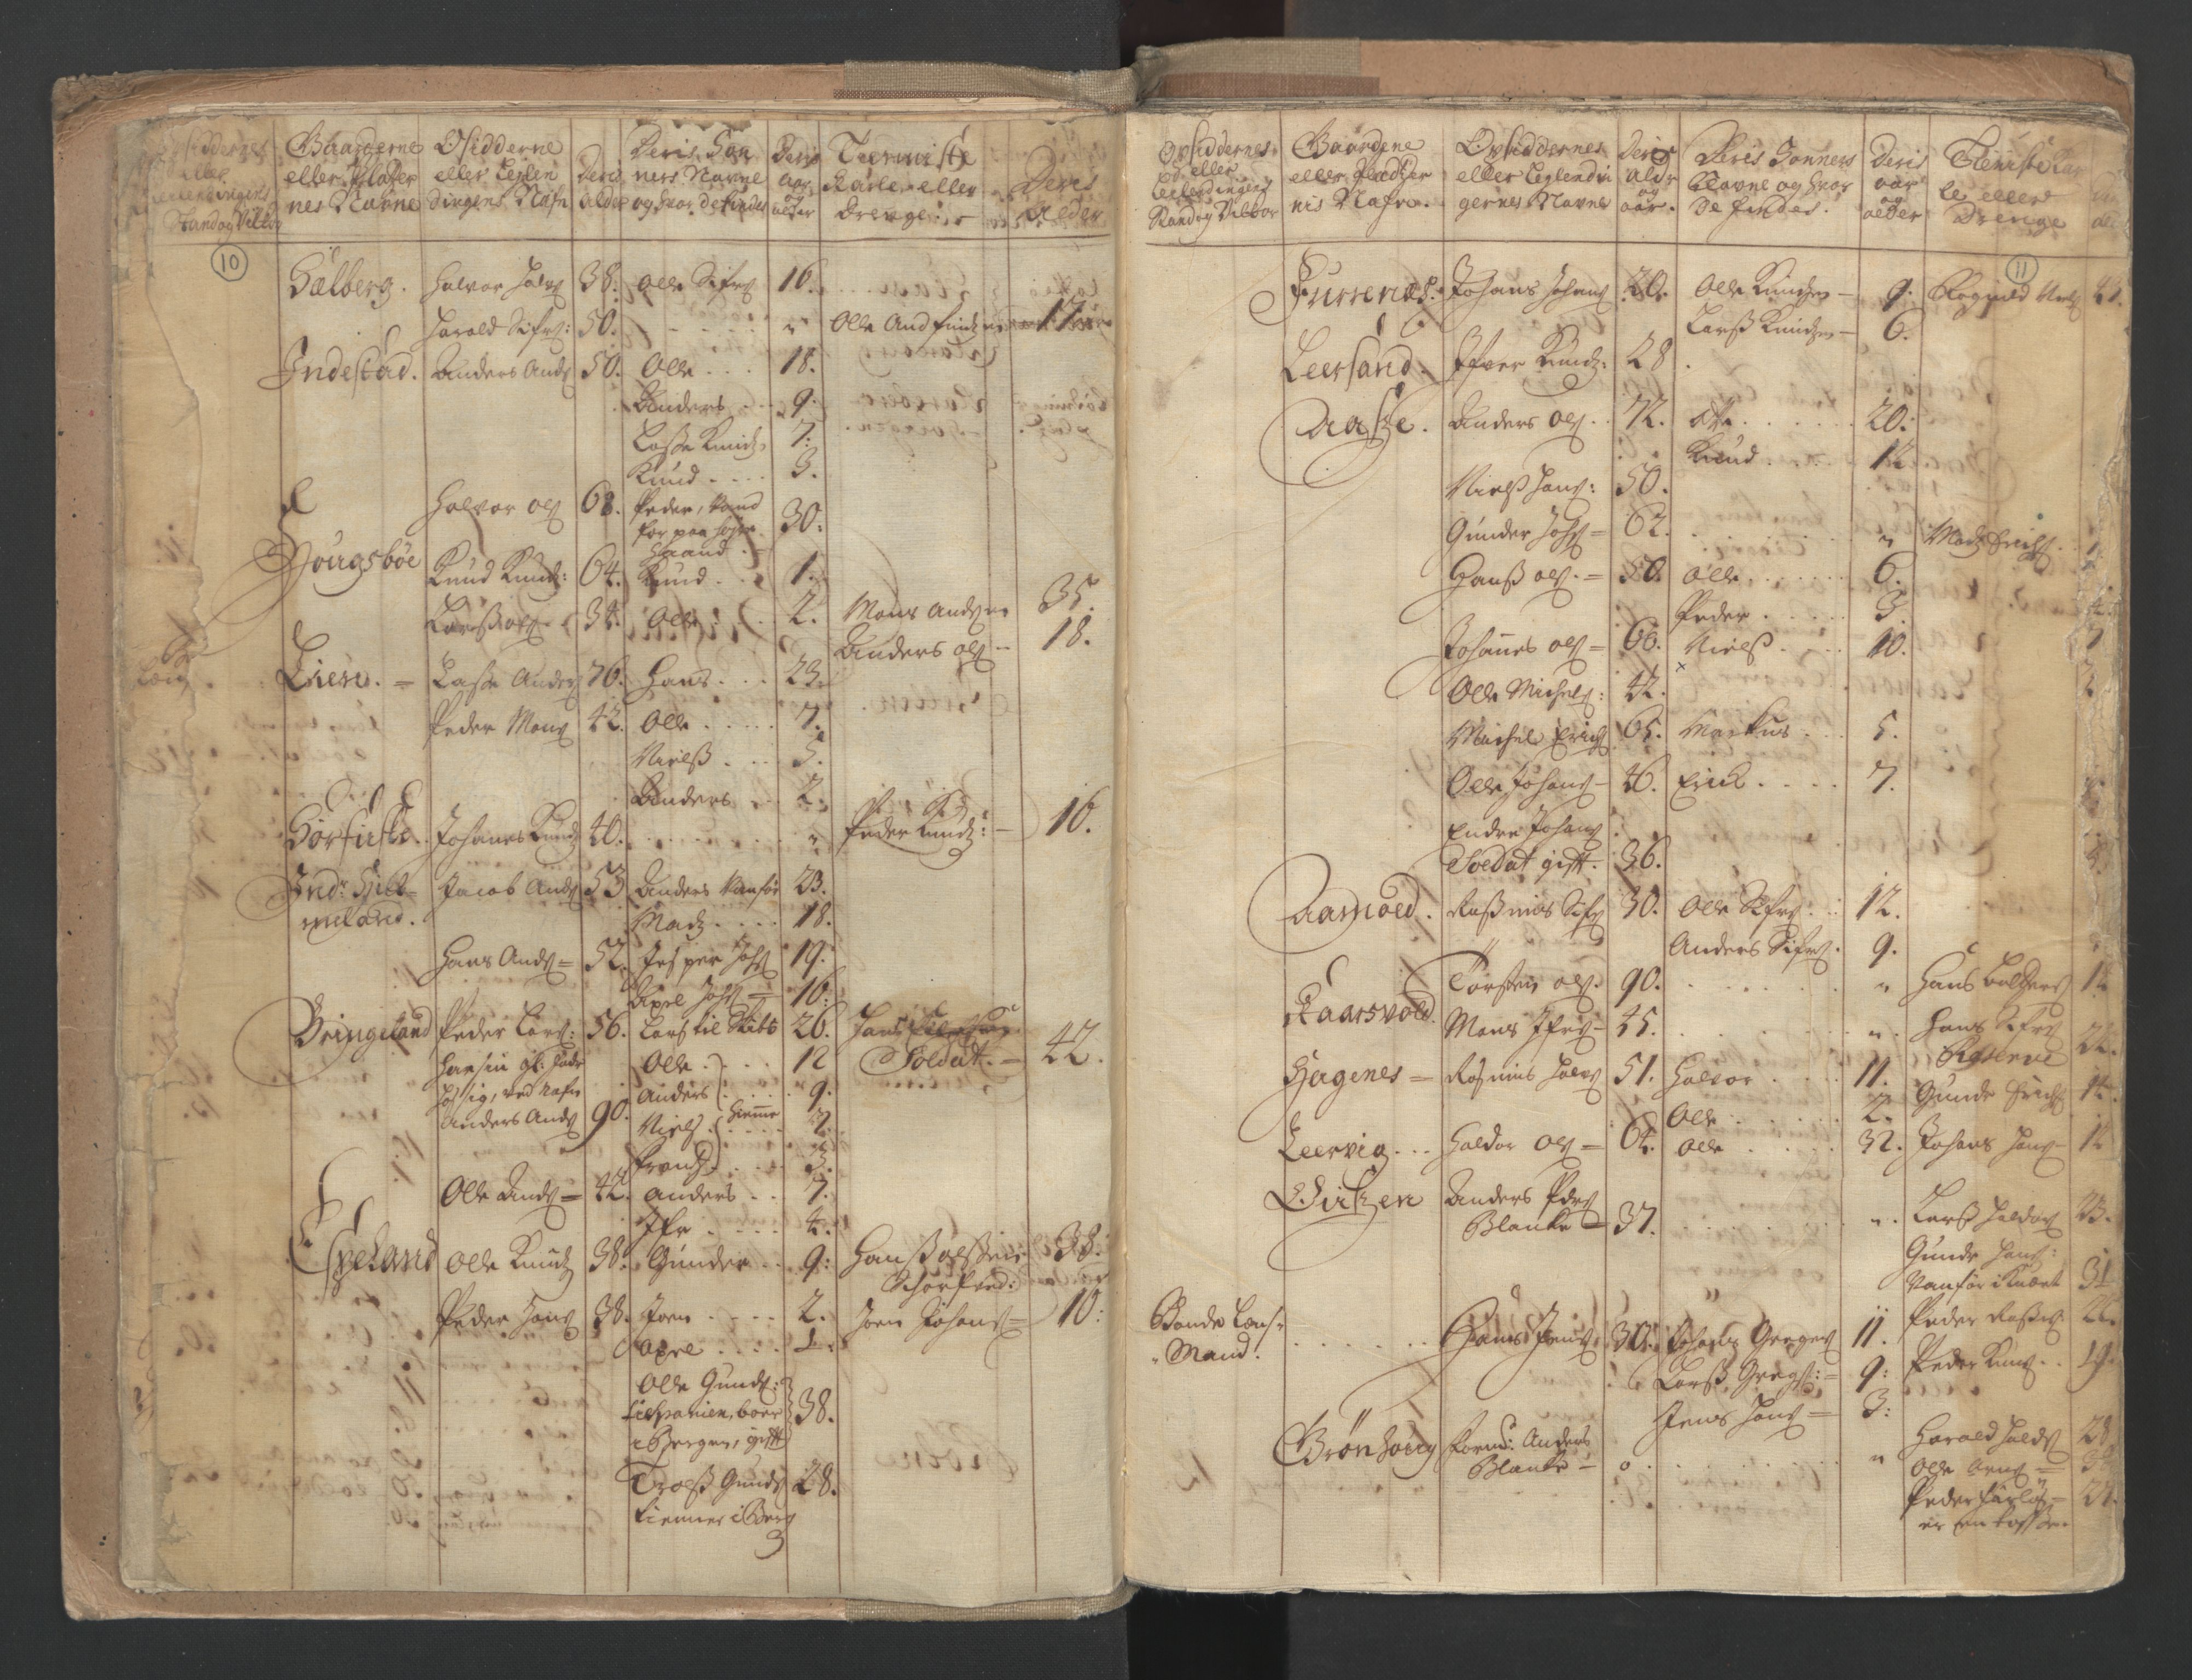 RA, Manntallet 1701, nr. 9: Sunnfjord fogderi, Nordfjord fogderi og Svanø birk, 1701, s. 10-11